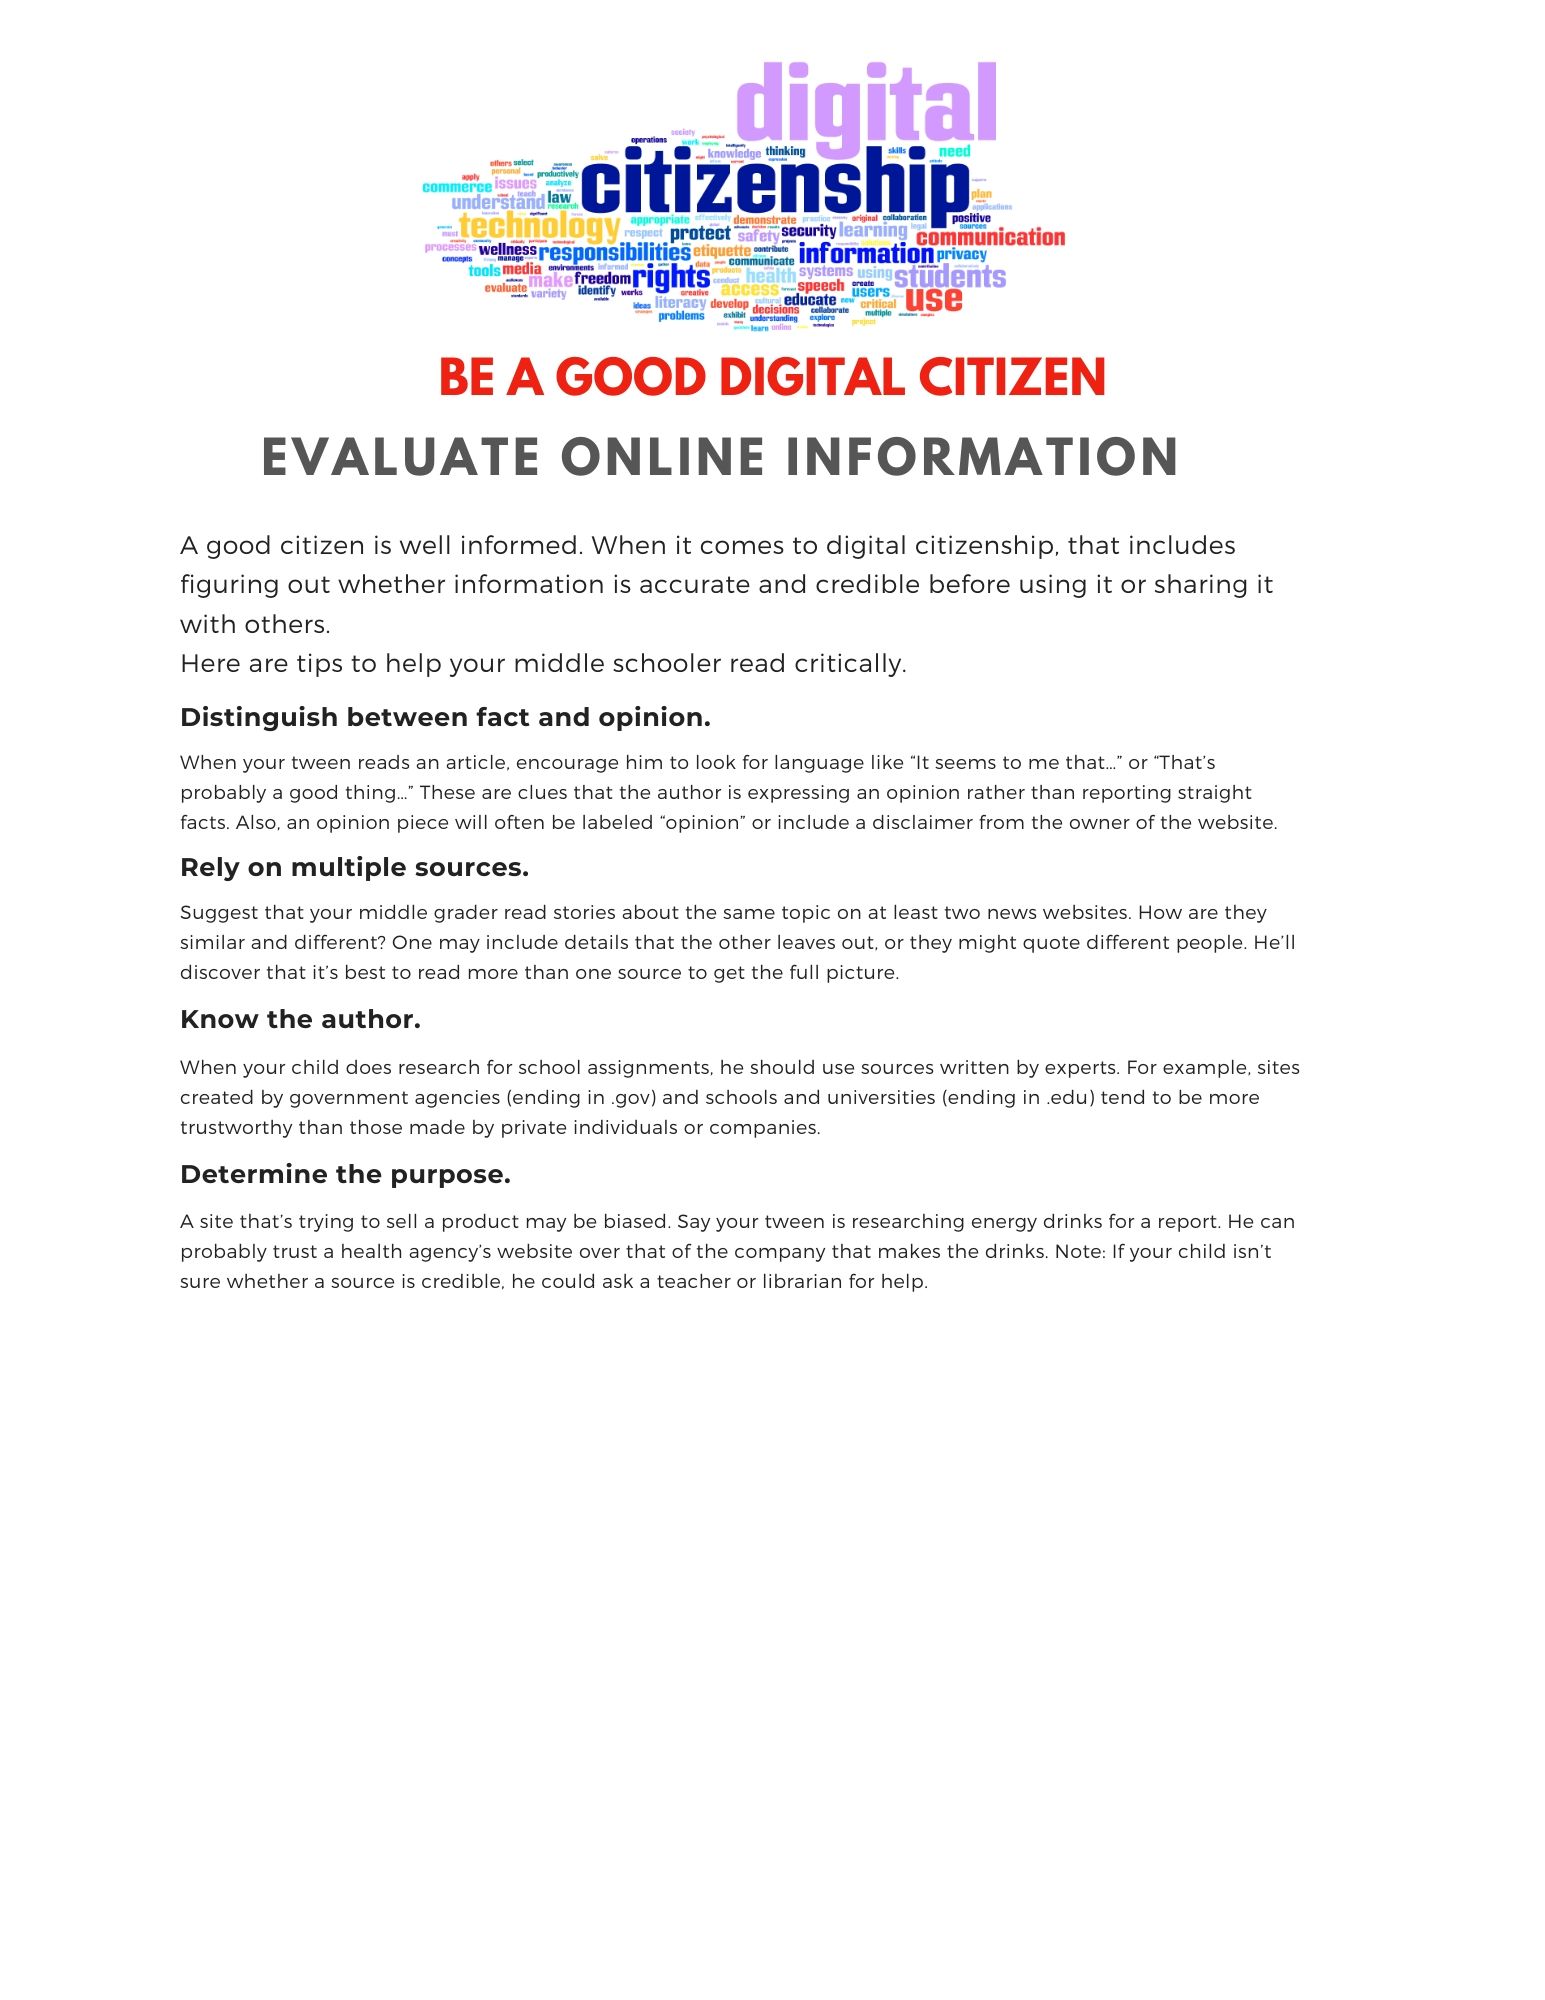 Evaluate Online Information